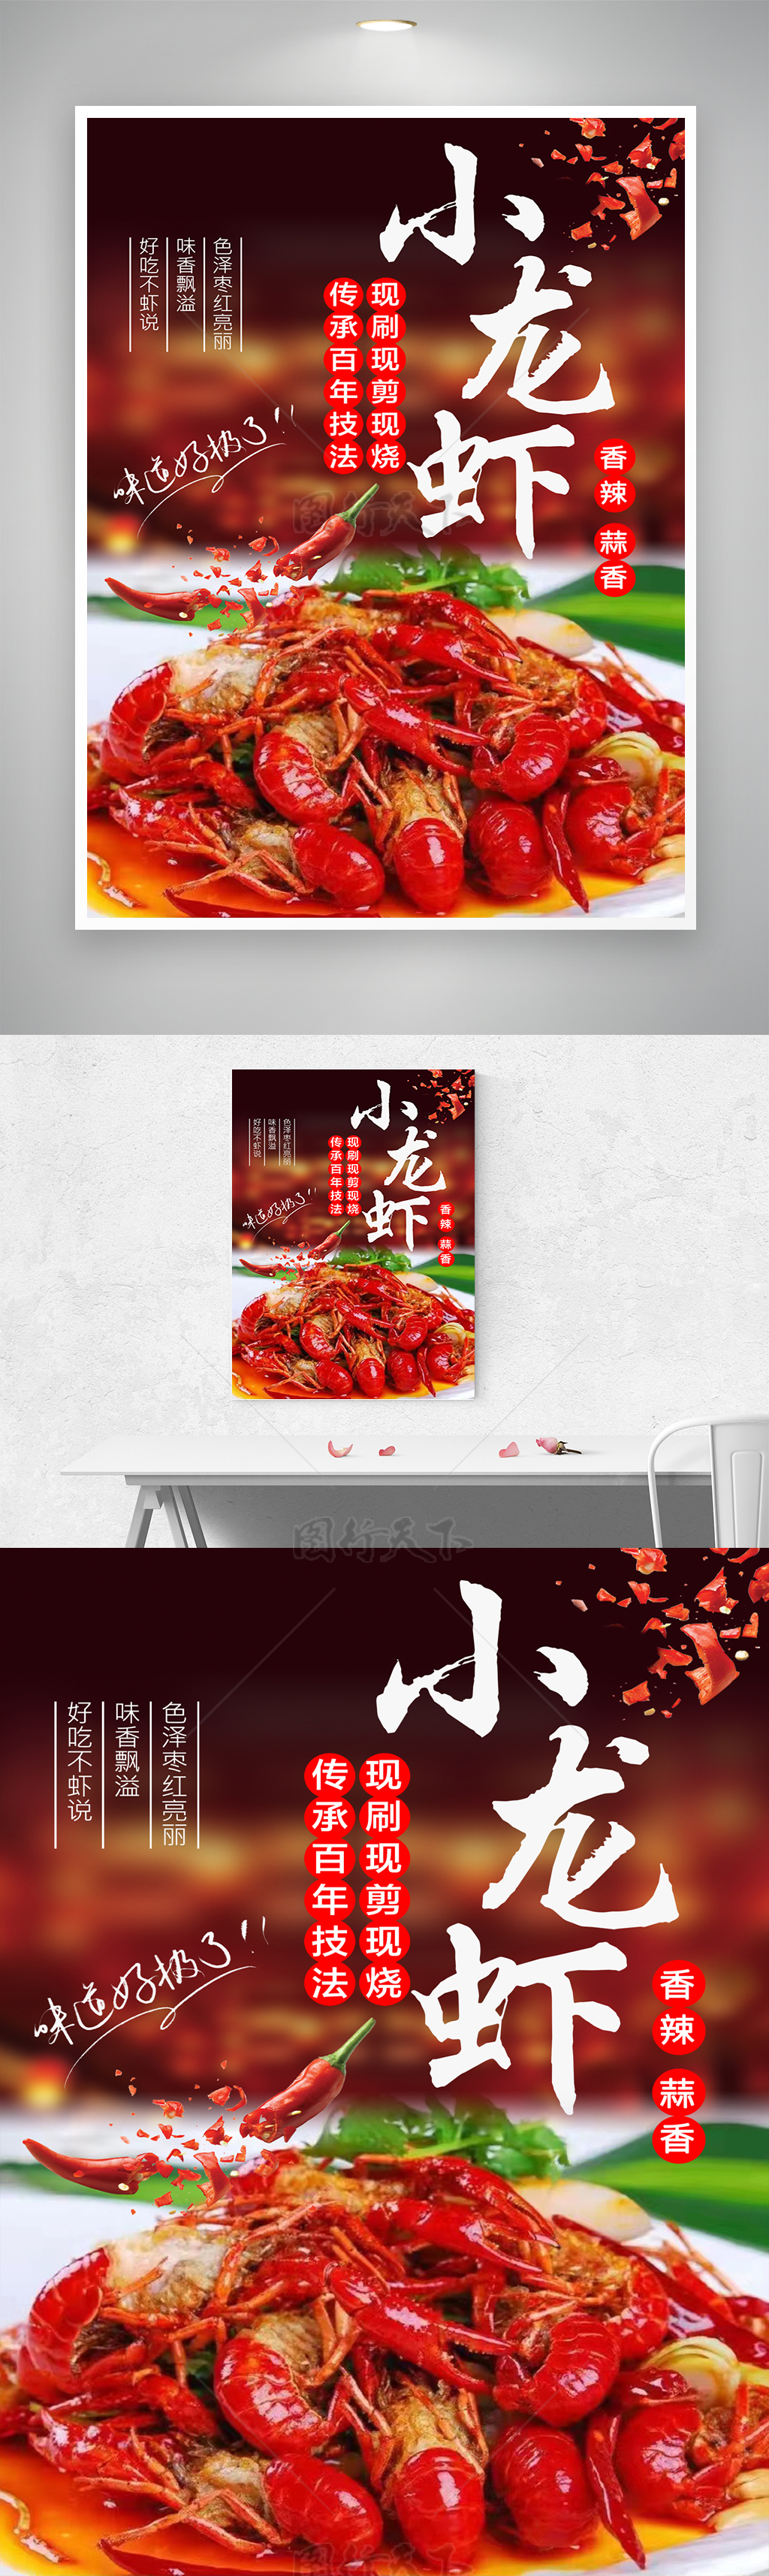 情迷小龙虾的味蕾宣传海报素材